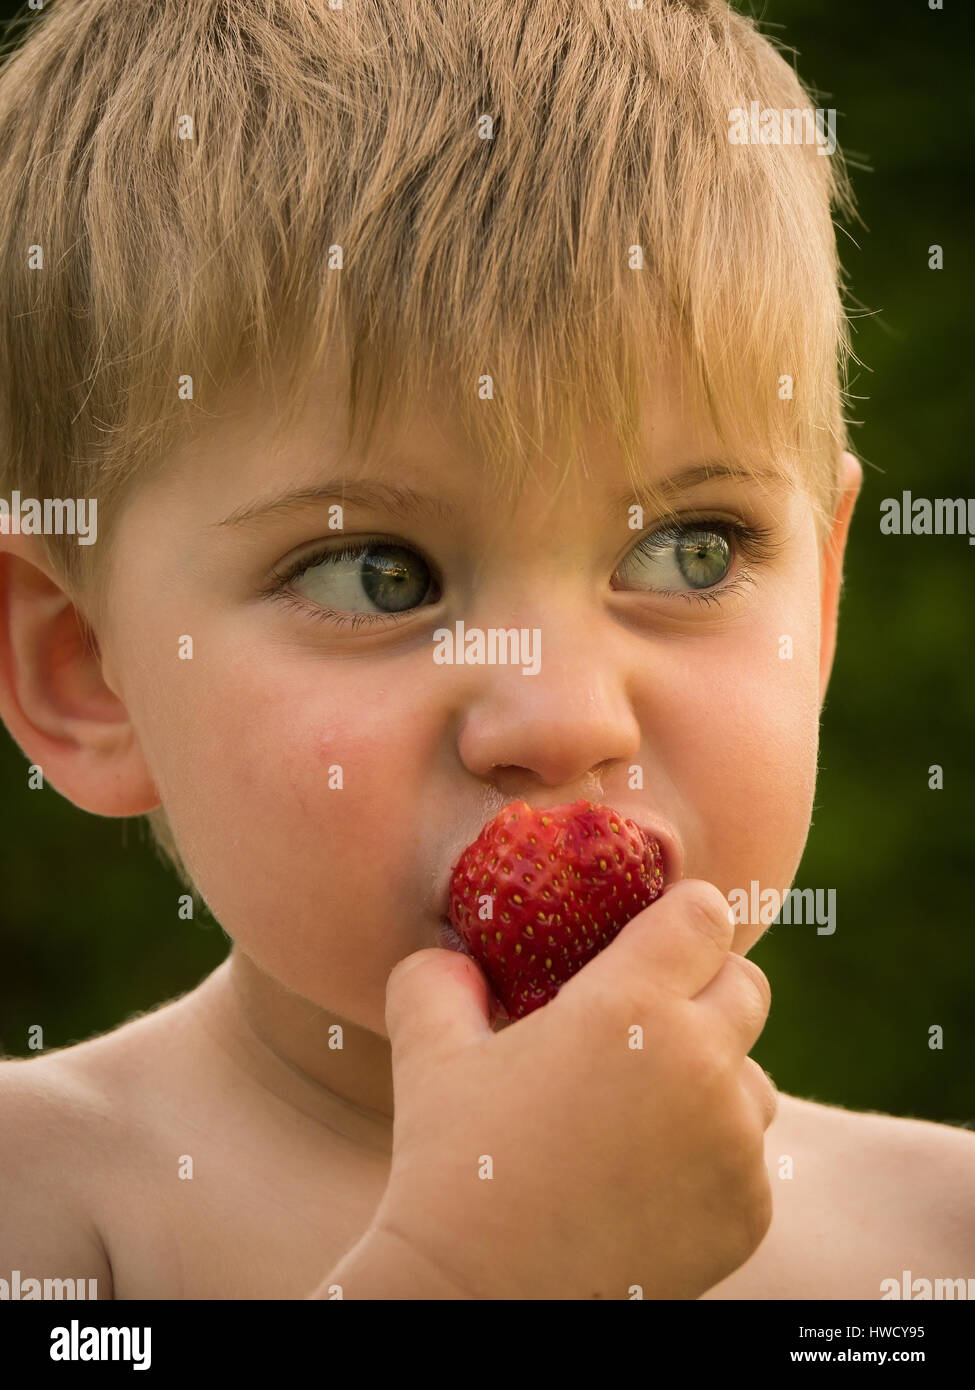 A small boy eats fresh strawberries from own garden in summer, Ein kleiner Junge isst frische Erdbeeren aus dem eigenen Garten im Sommer Stock Photo